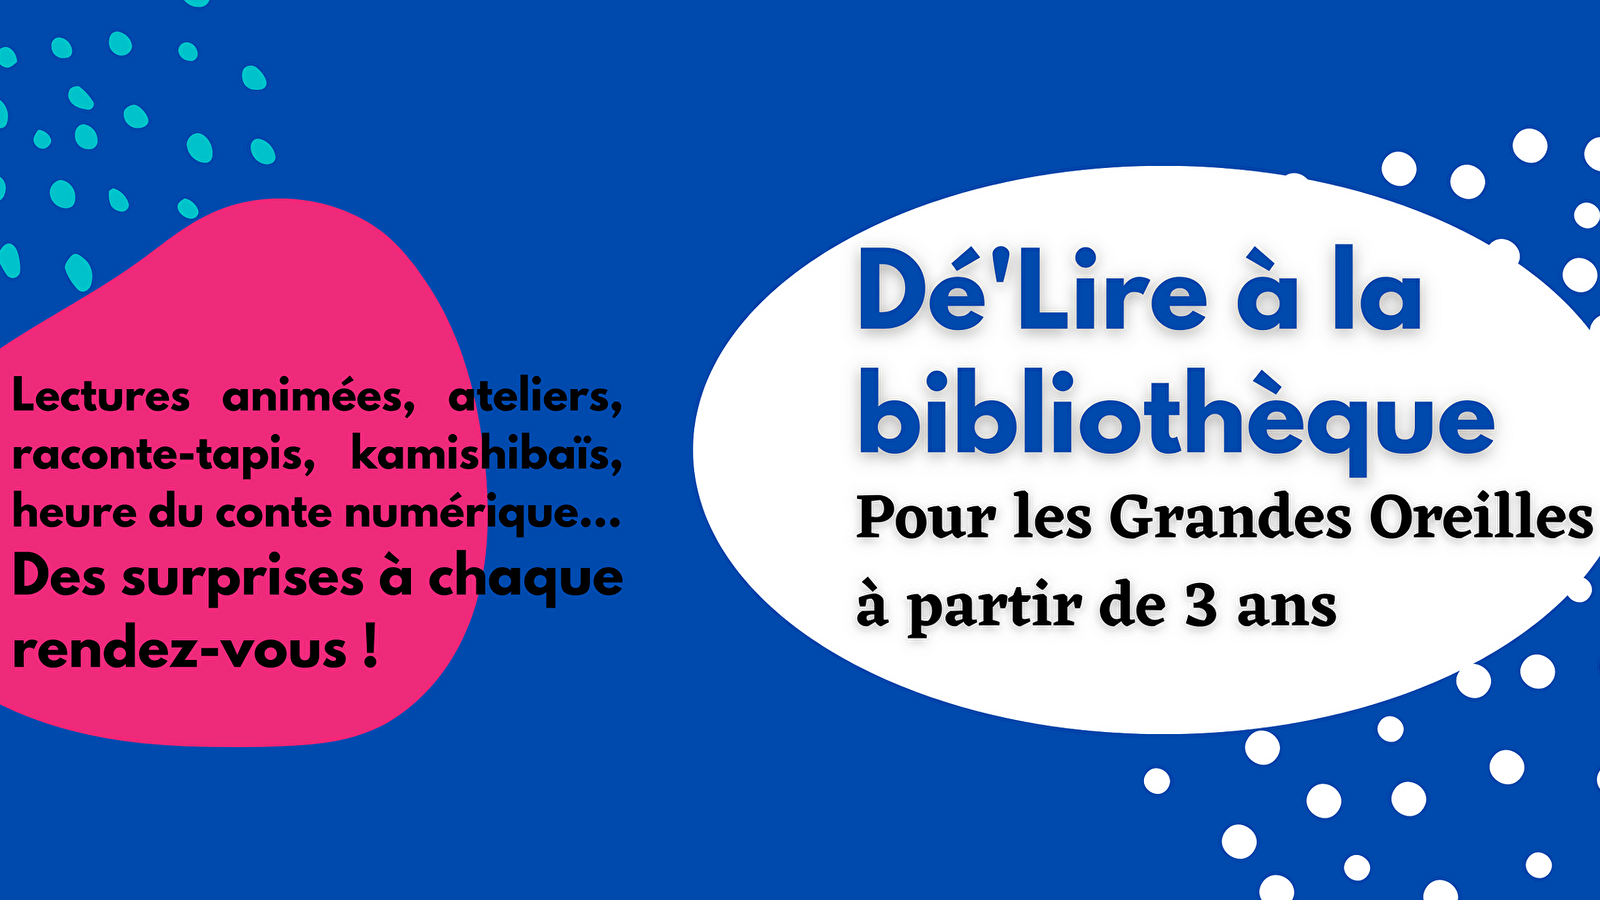 Dé'Lire at the library for Grandes Oreilles (Jacques-Lacarrière)